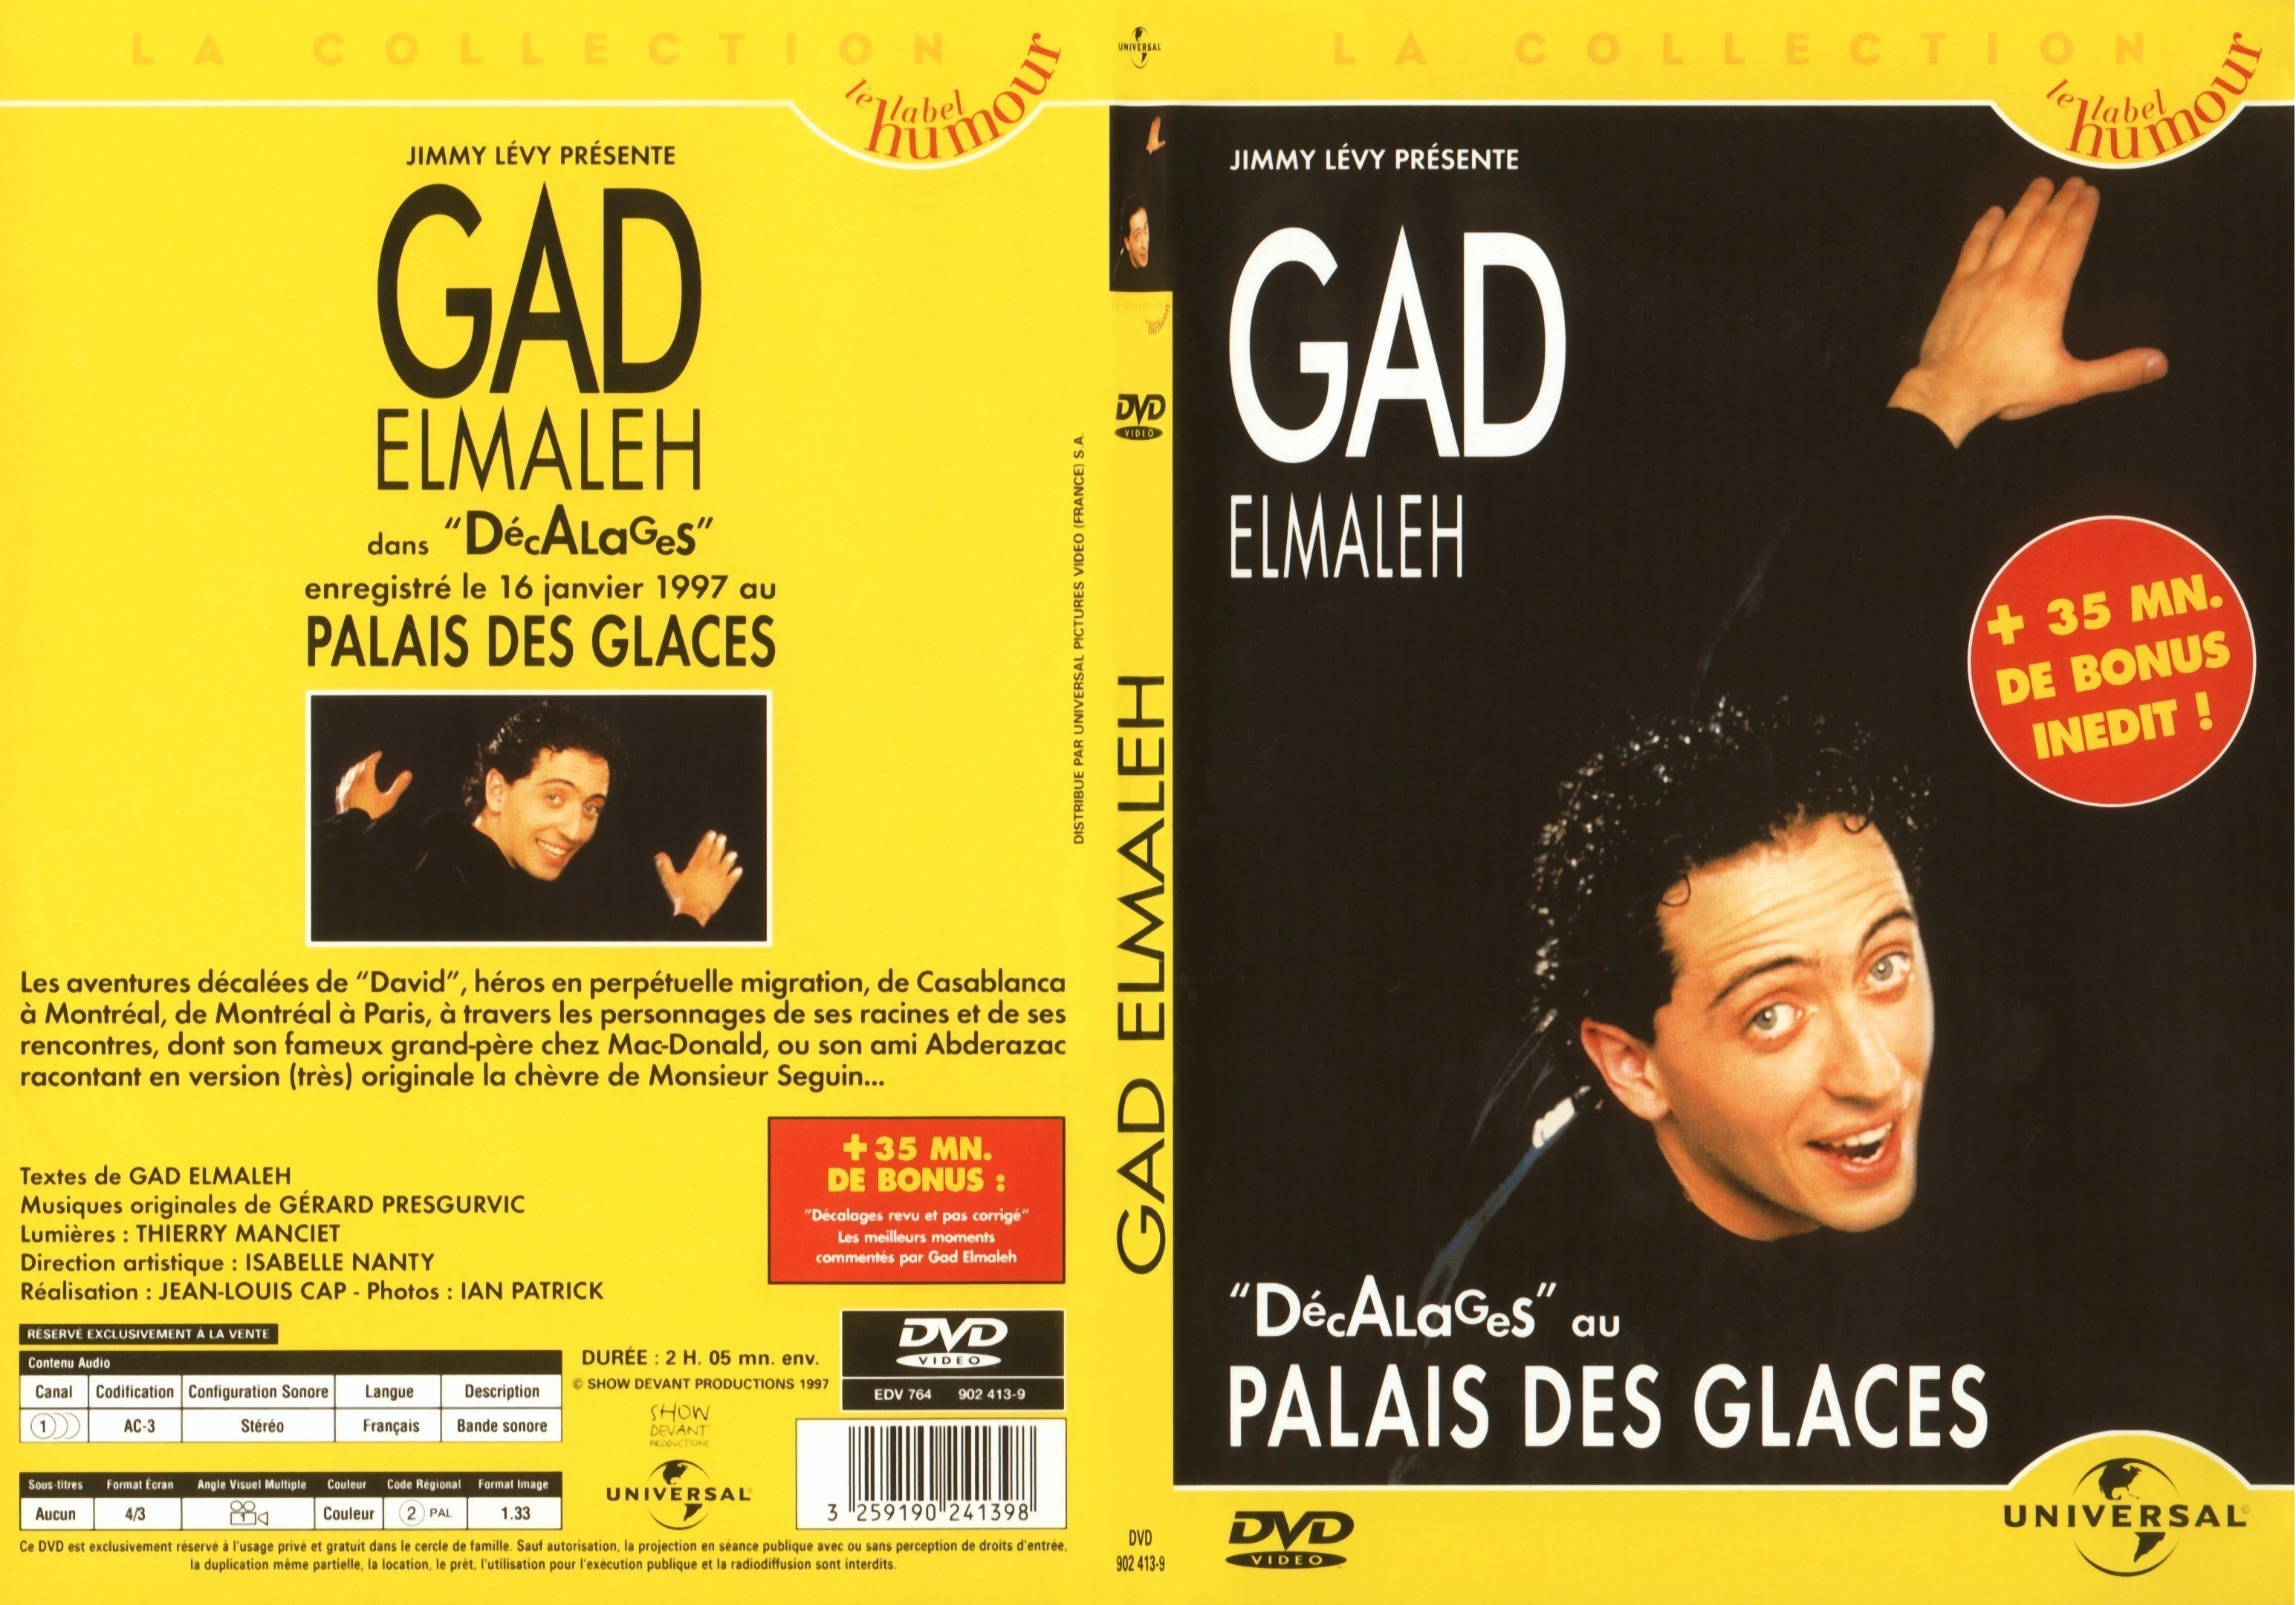 Jaquette DVD Gad Elmaleh dcalages au palais des glaces - SLIM